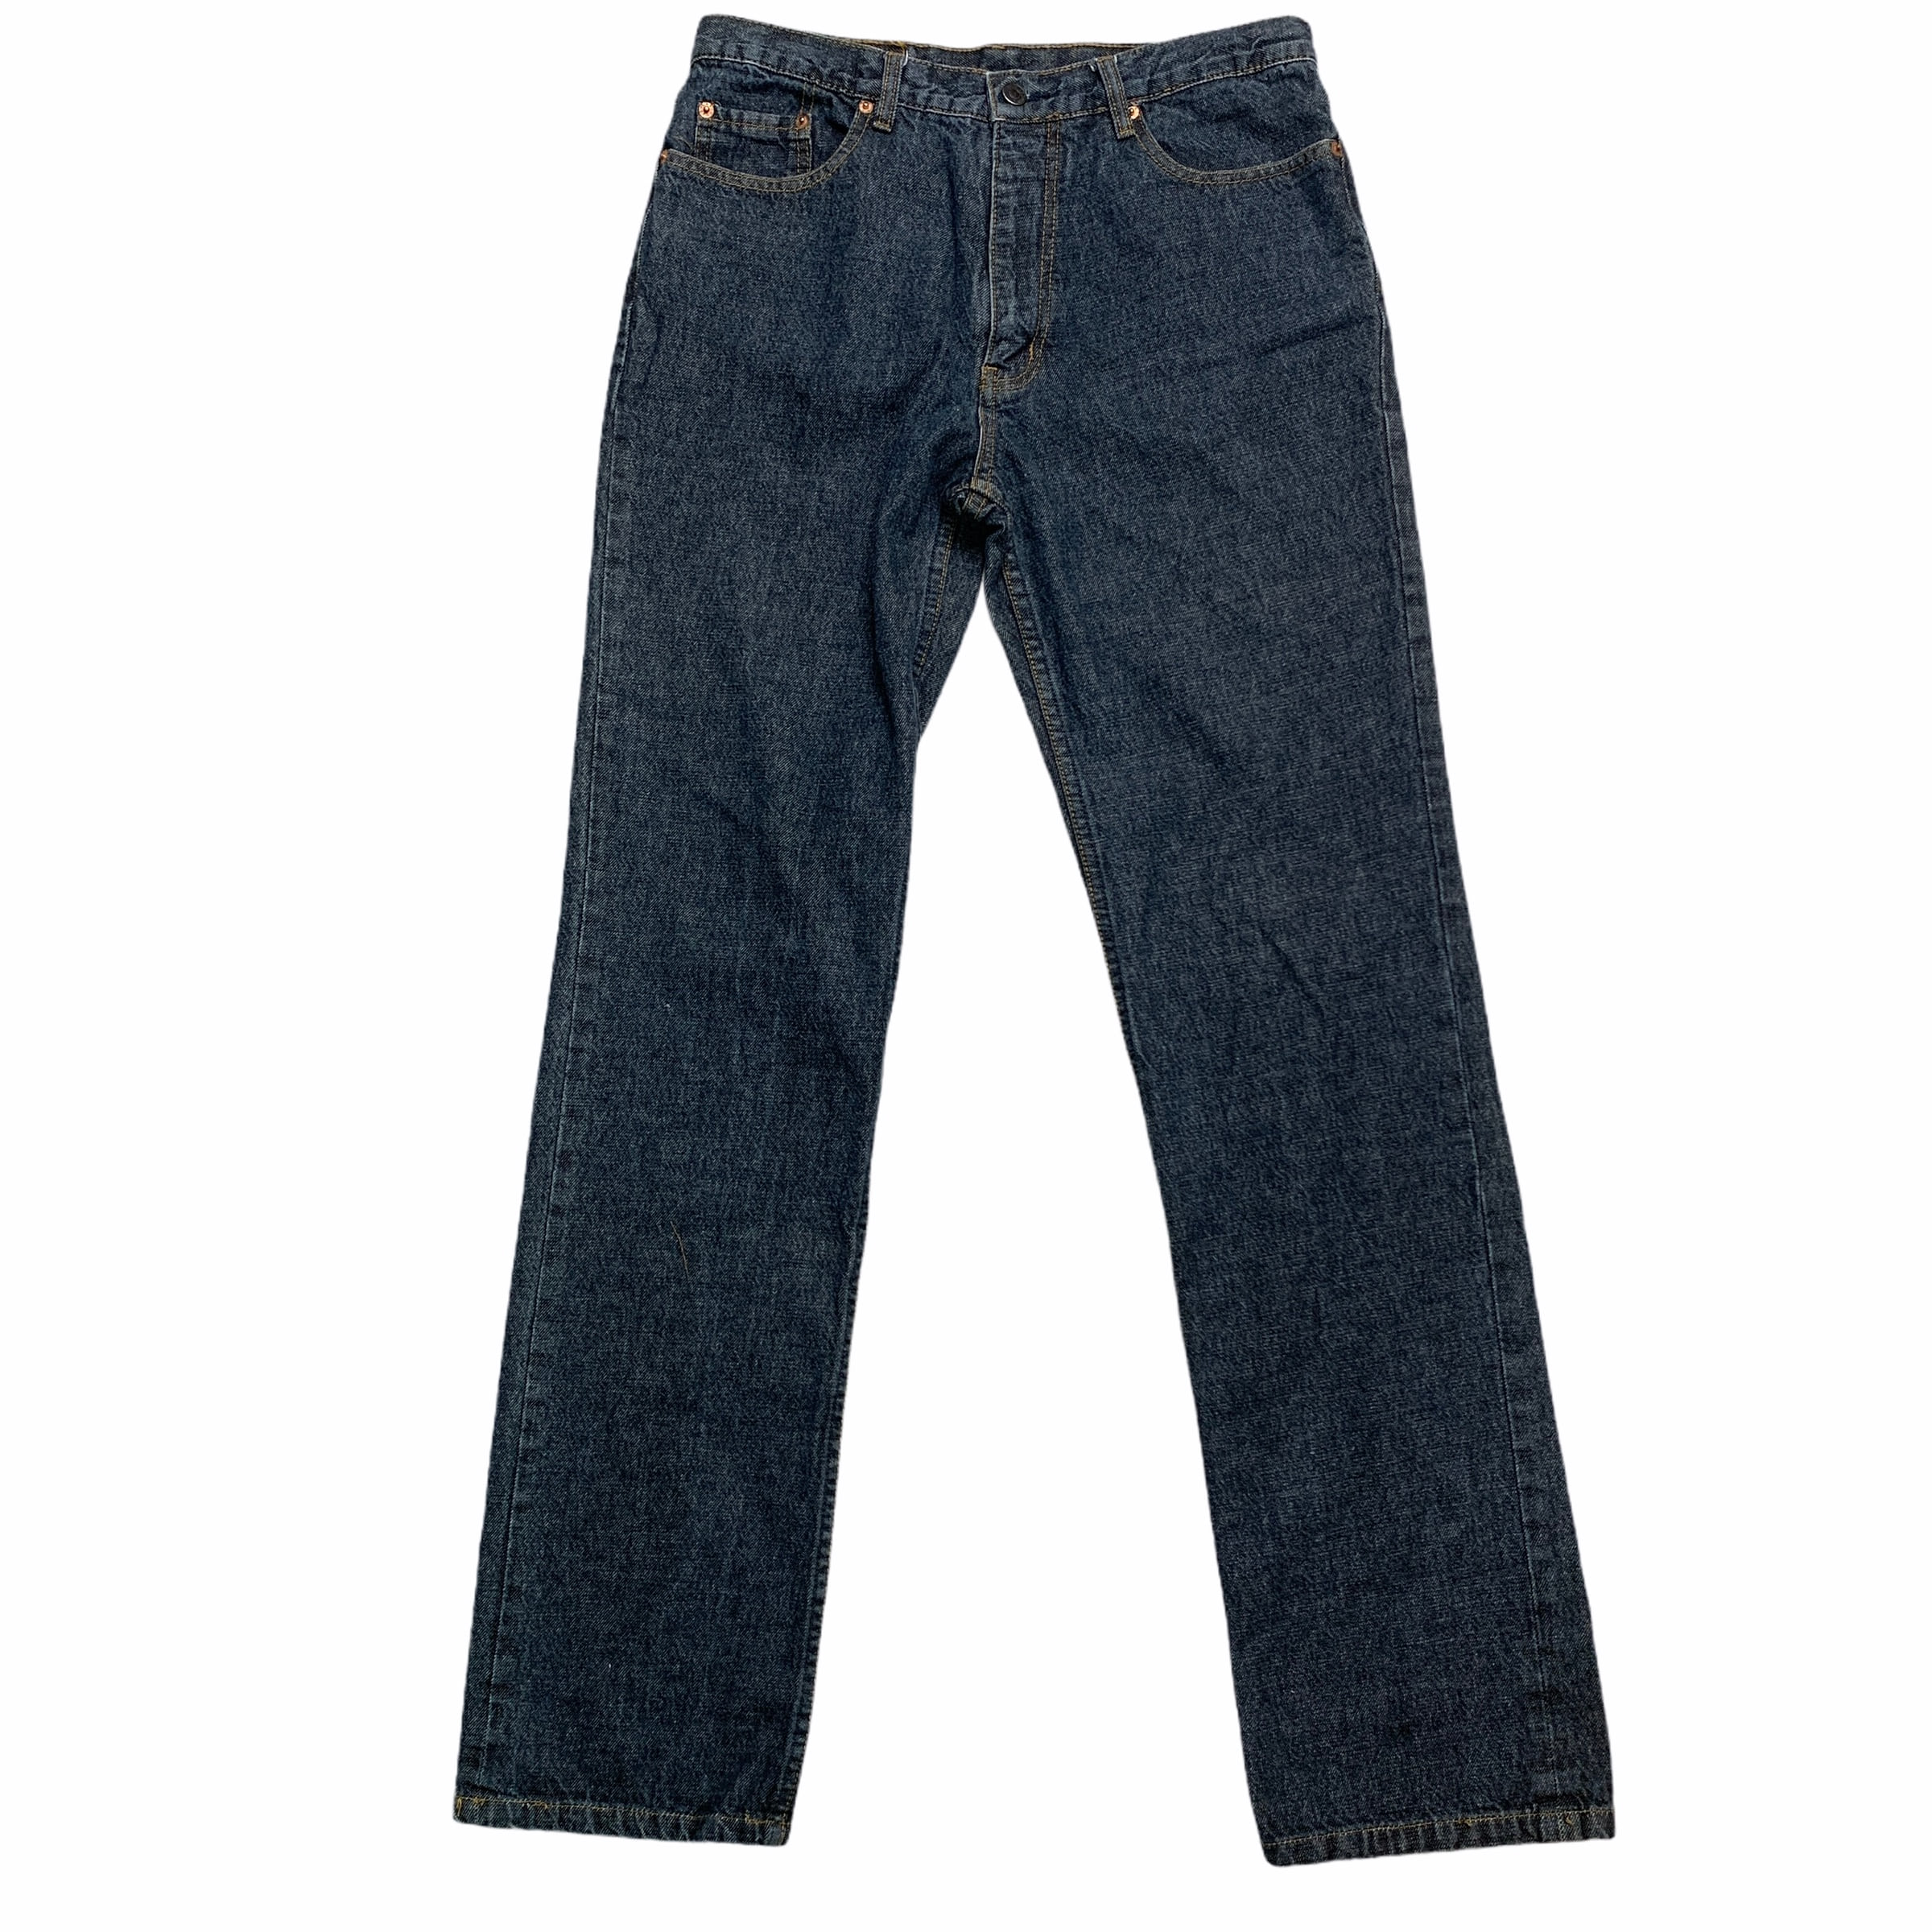 [Levis] (Vintage) 512 Denim pants - Size 34/32